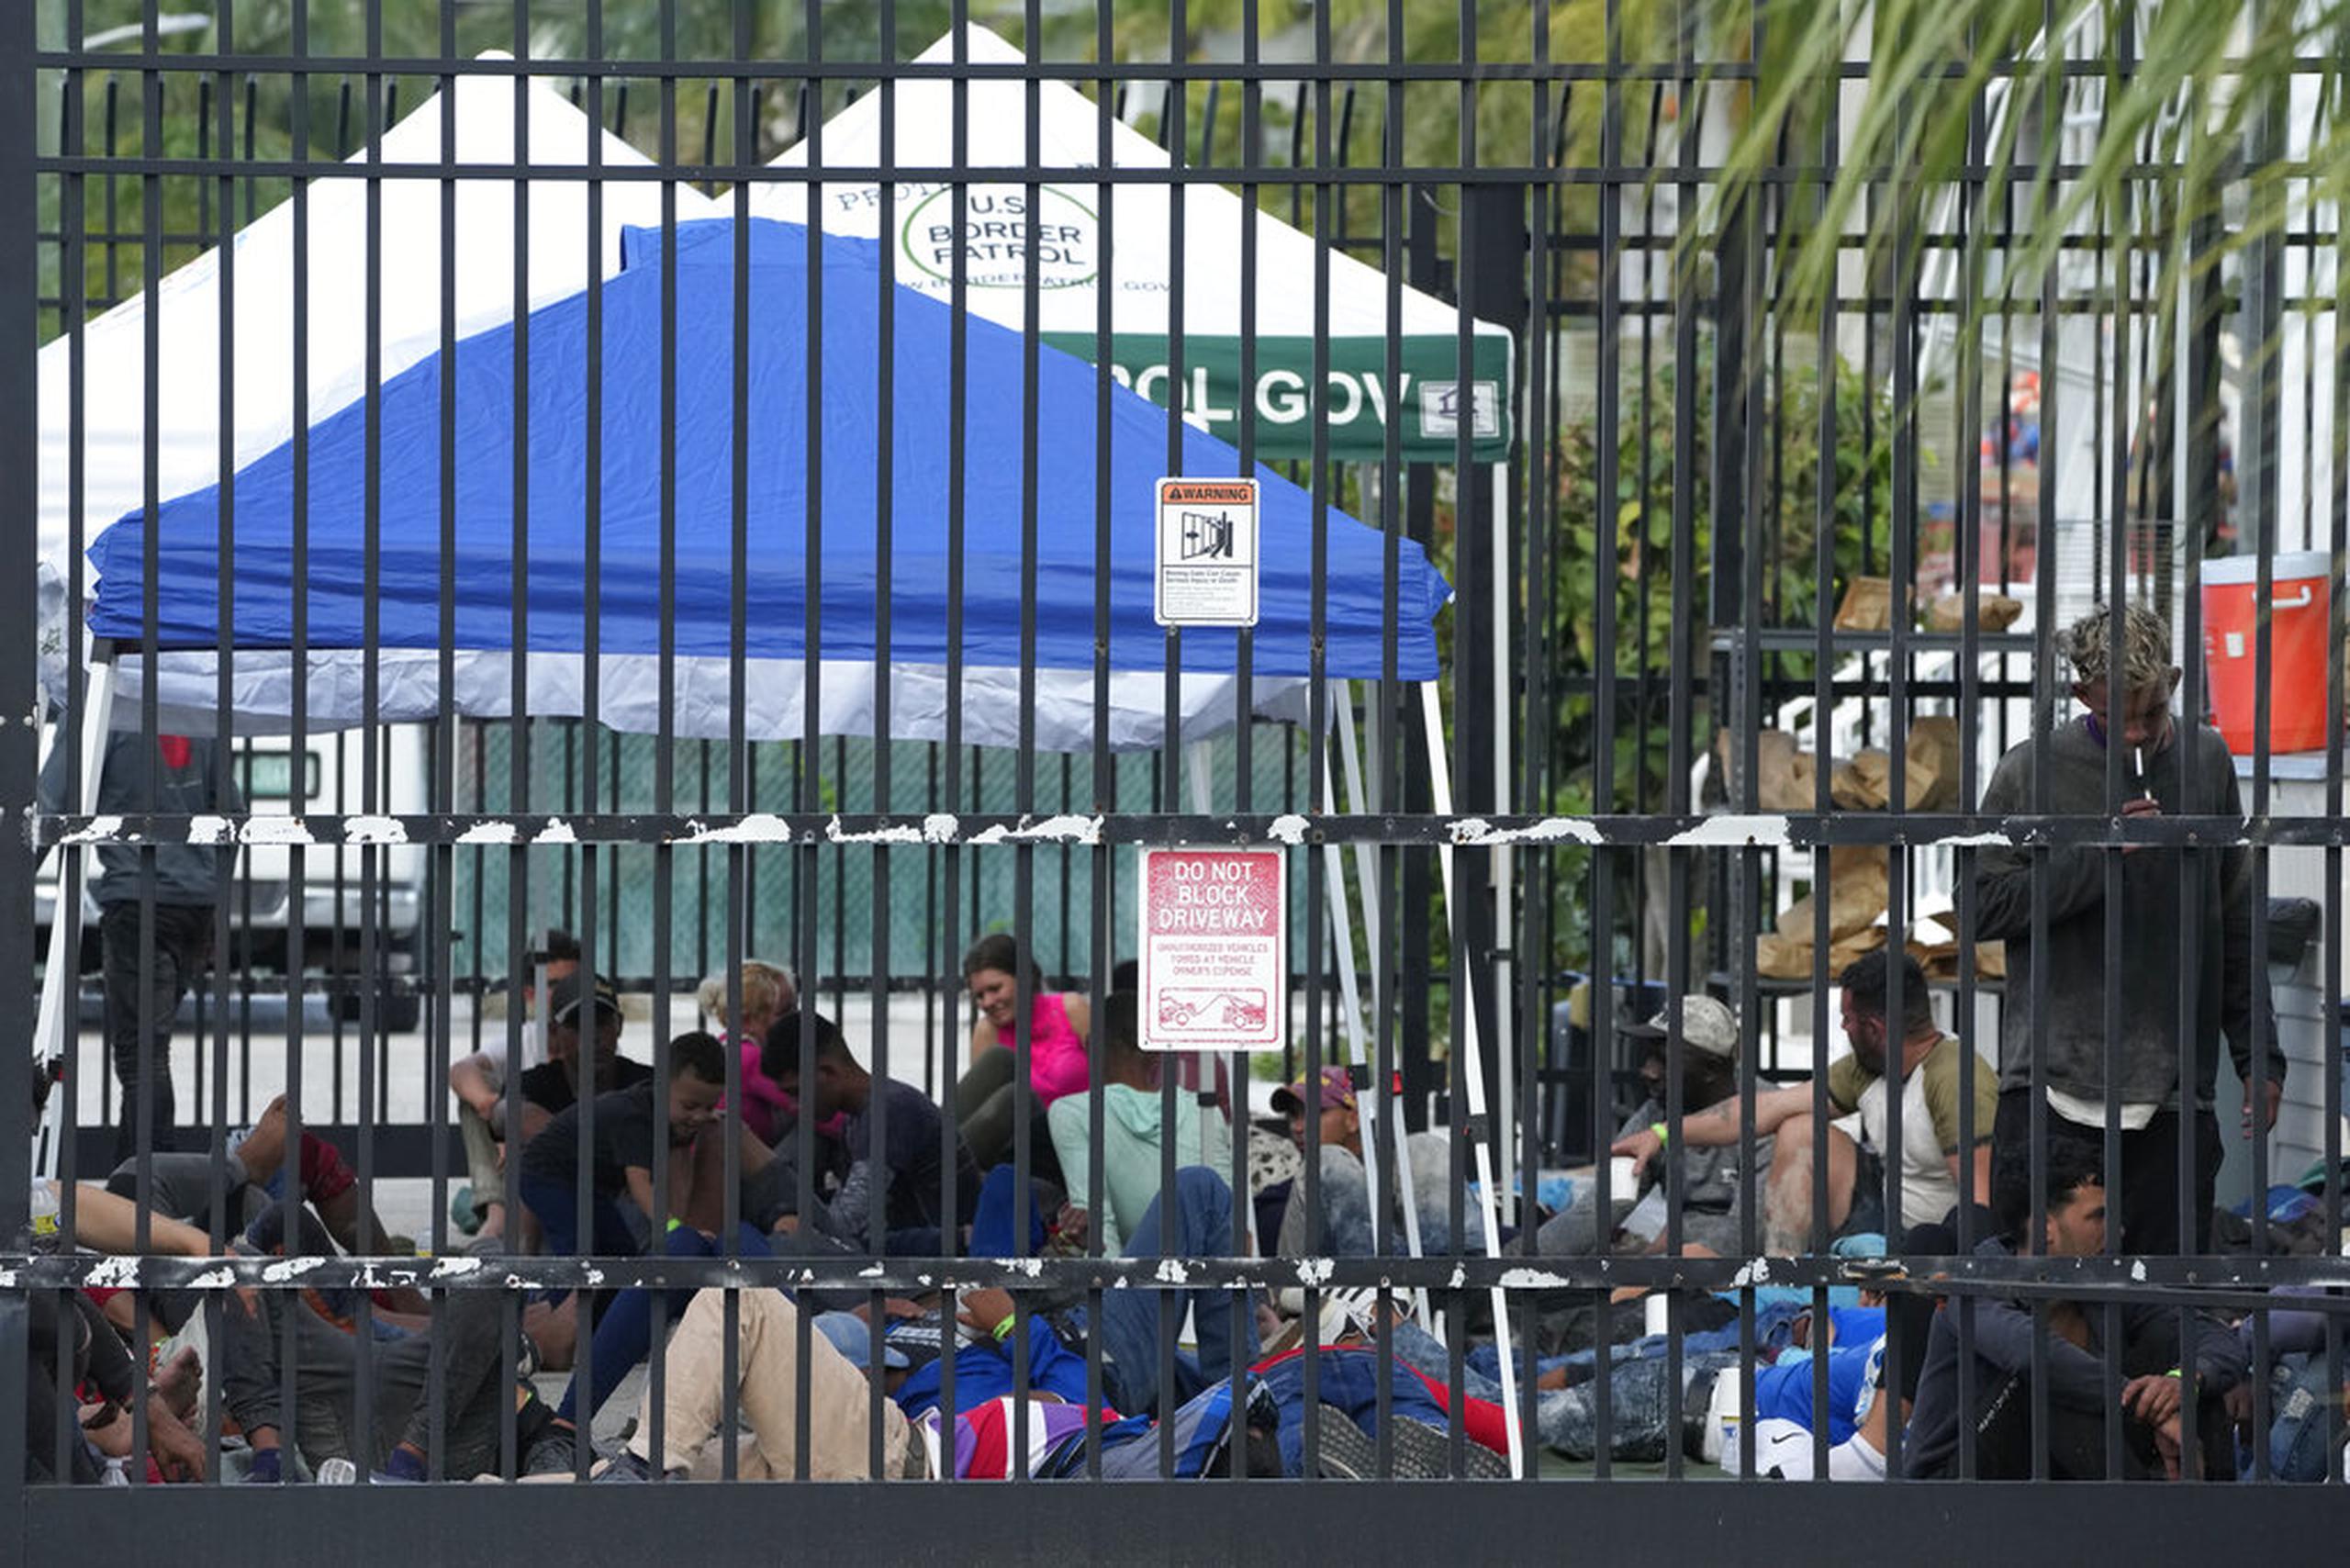 El gobernador de California, Gavin Newsom, tipificó este lunes de posible “secuestro” el traslado de migrantes bajo las leyes de su estado, mientras el fiscal californiano, Rob Bonta, investiga el hecho.